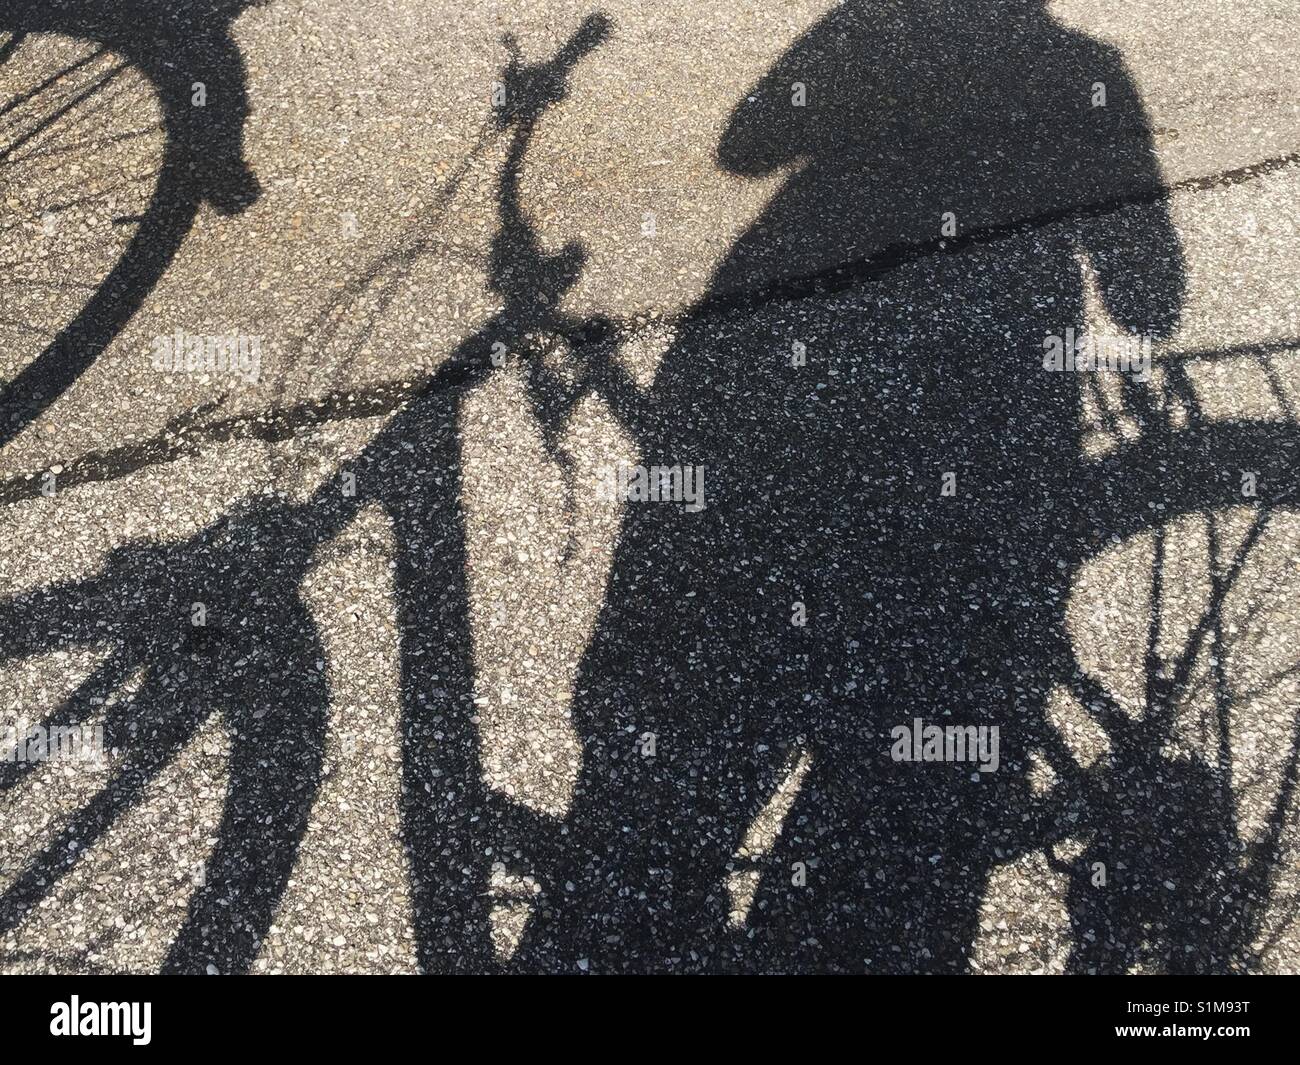 In der Nähe der Schatten auf dem Asphalt der Person, die mit dem Fahrrad. Nicht vollständig dargestellt. Stockfoto